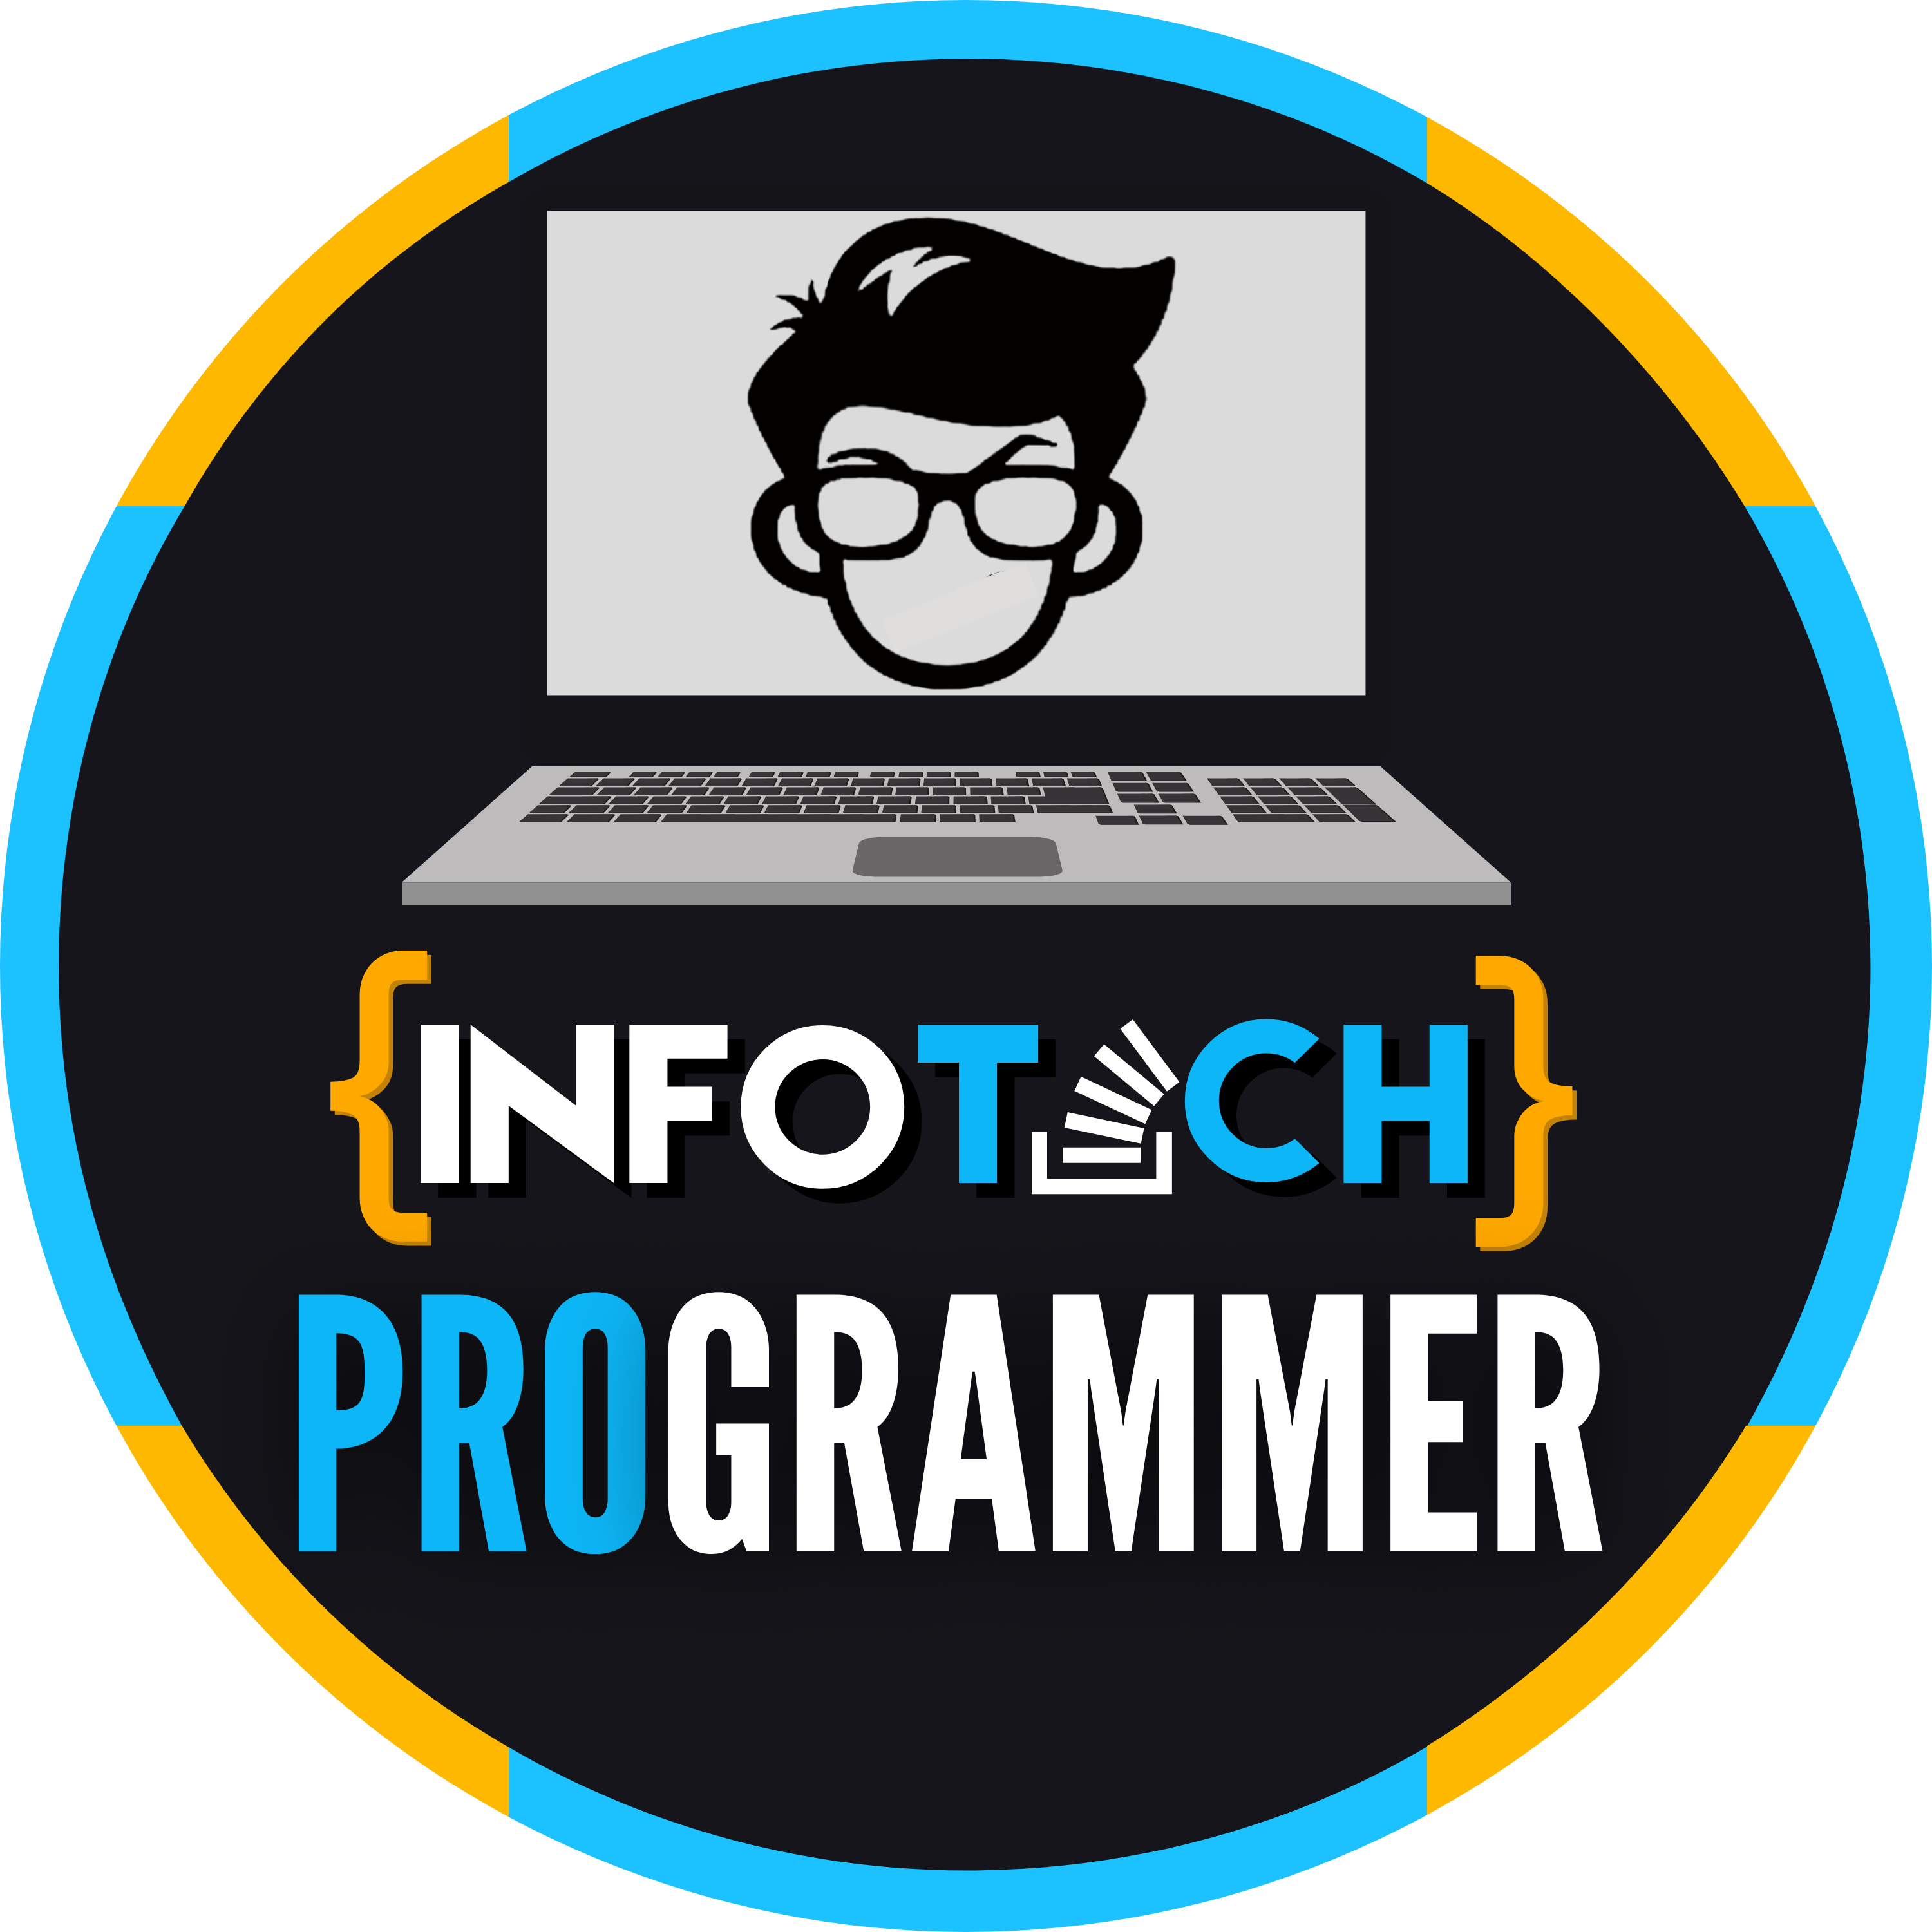 Infotech Programmer